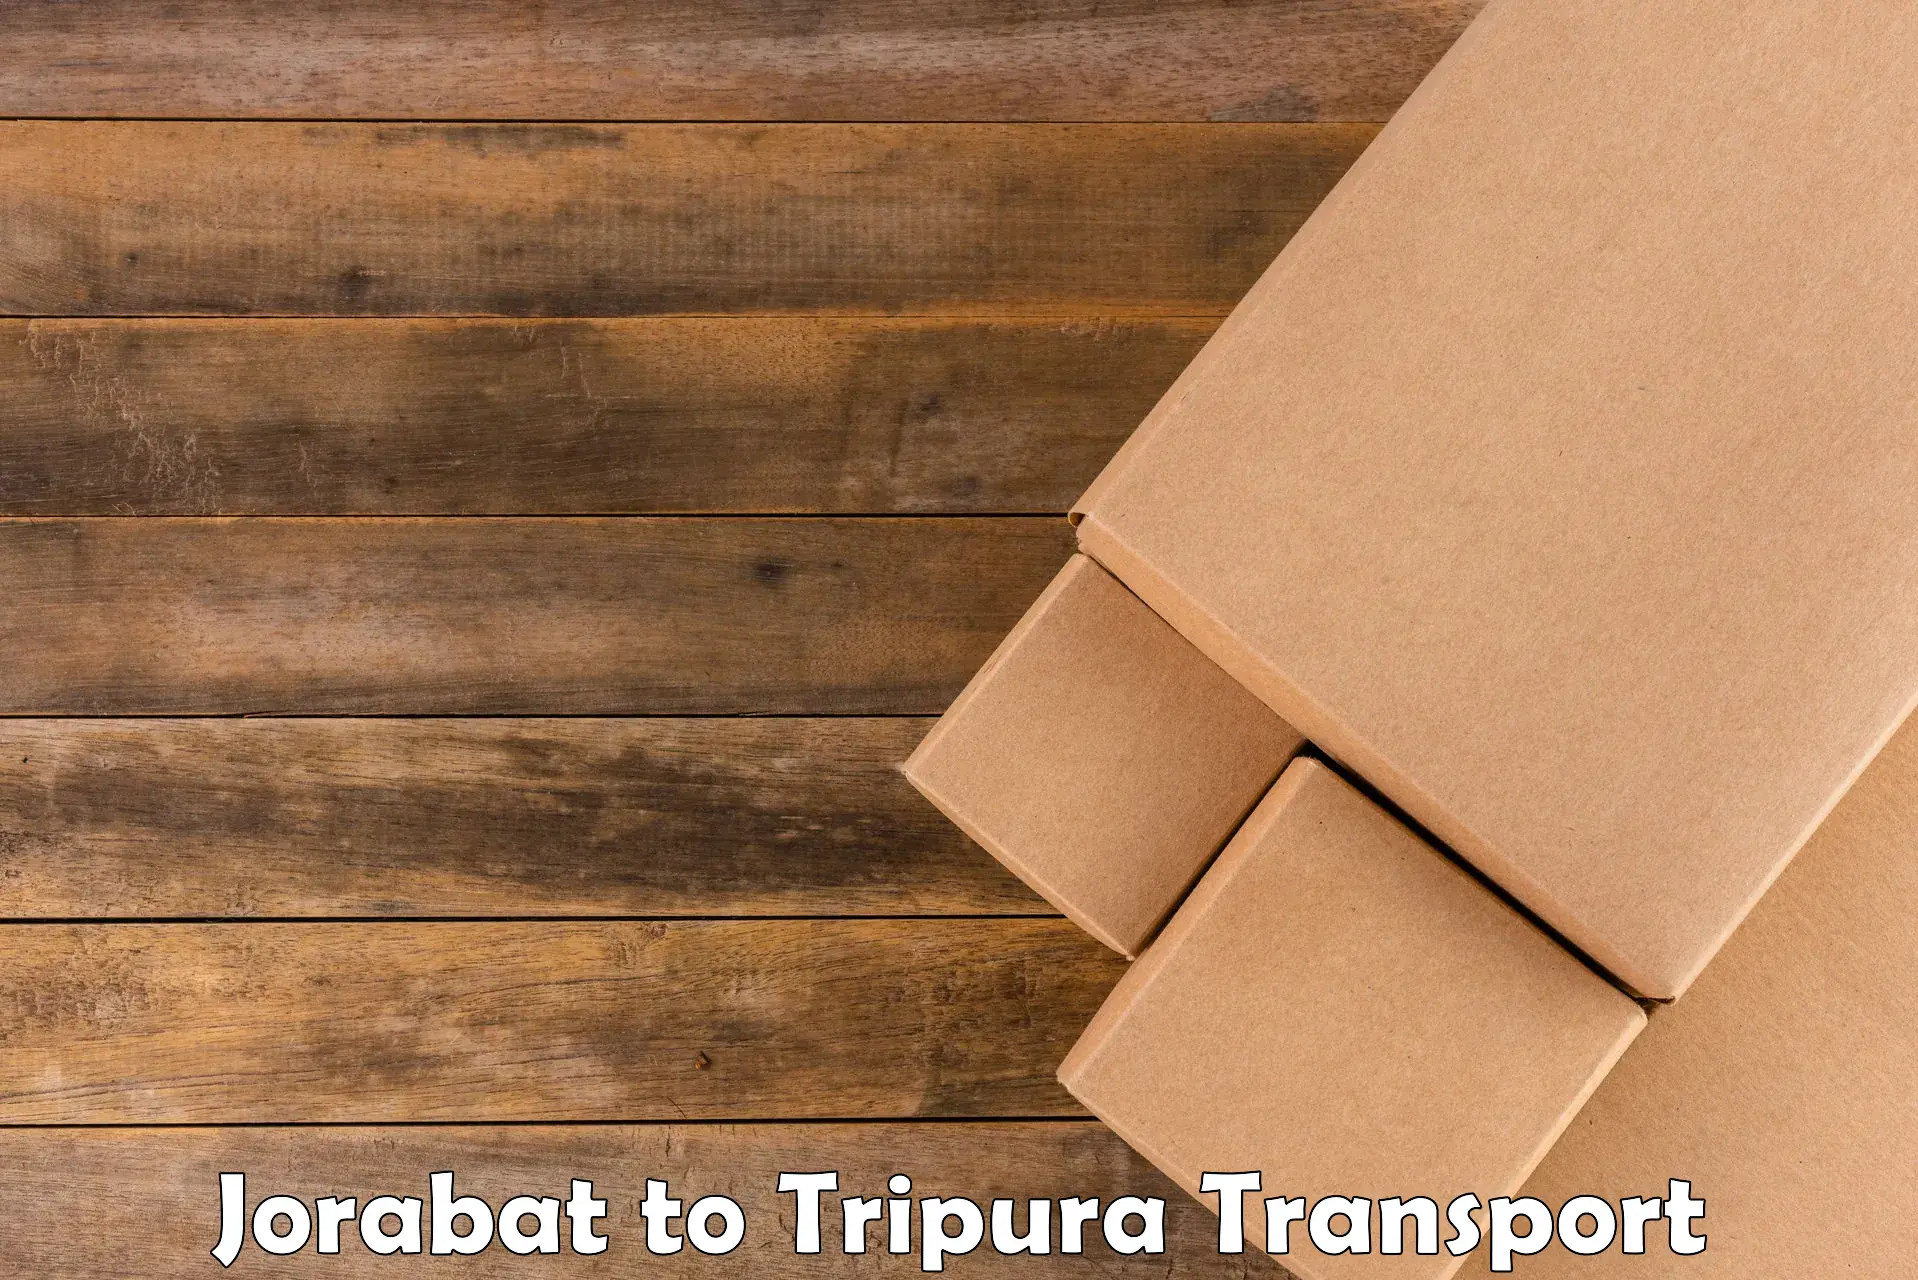 Luggage transport services in Jorabat to Tripura